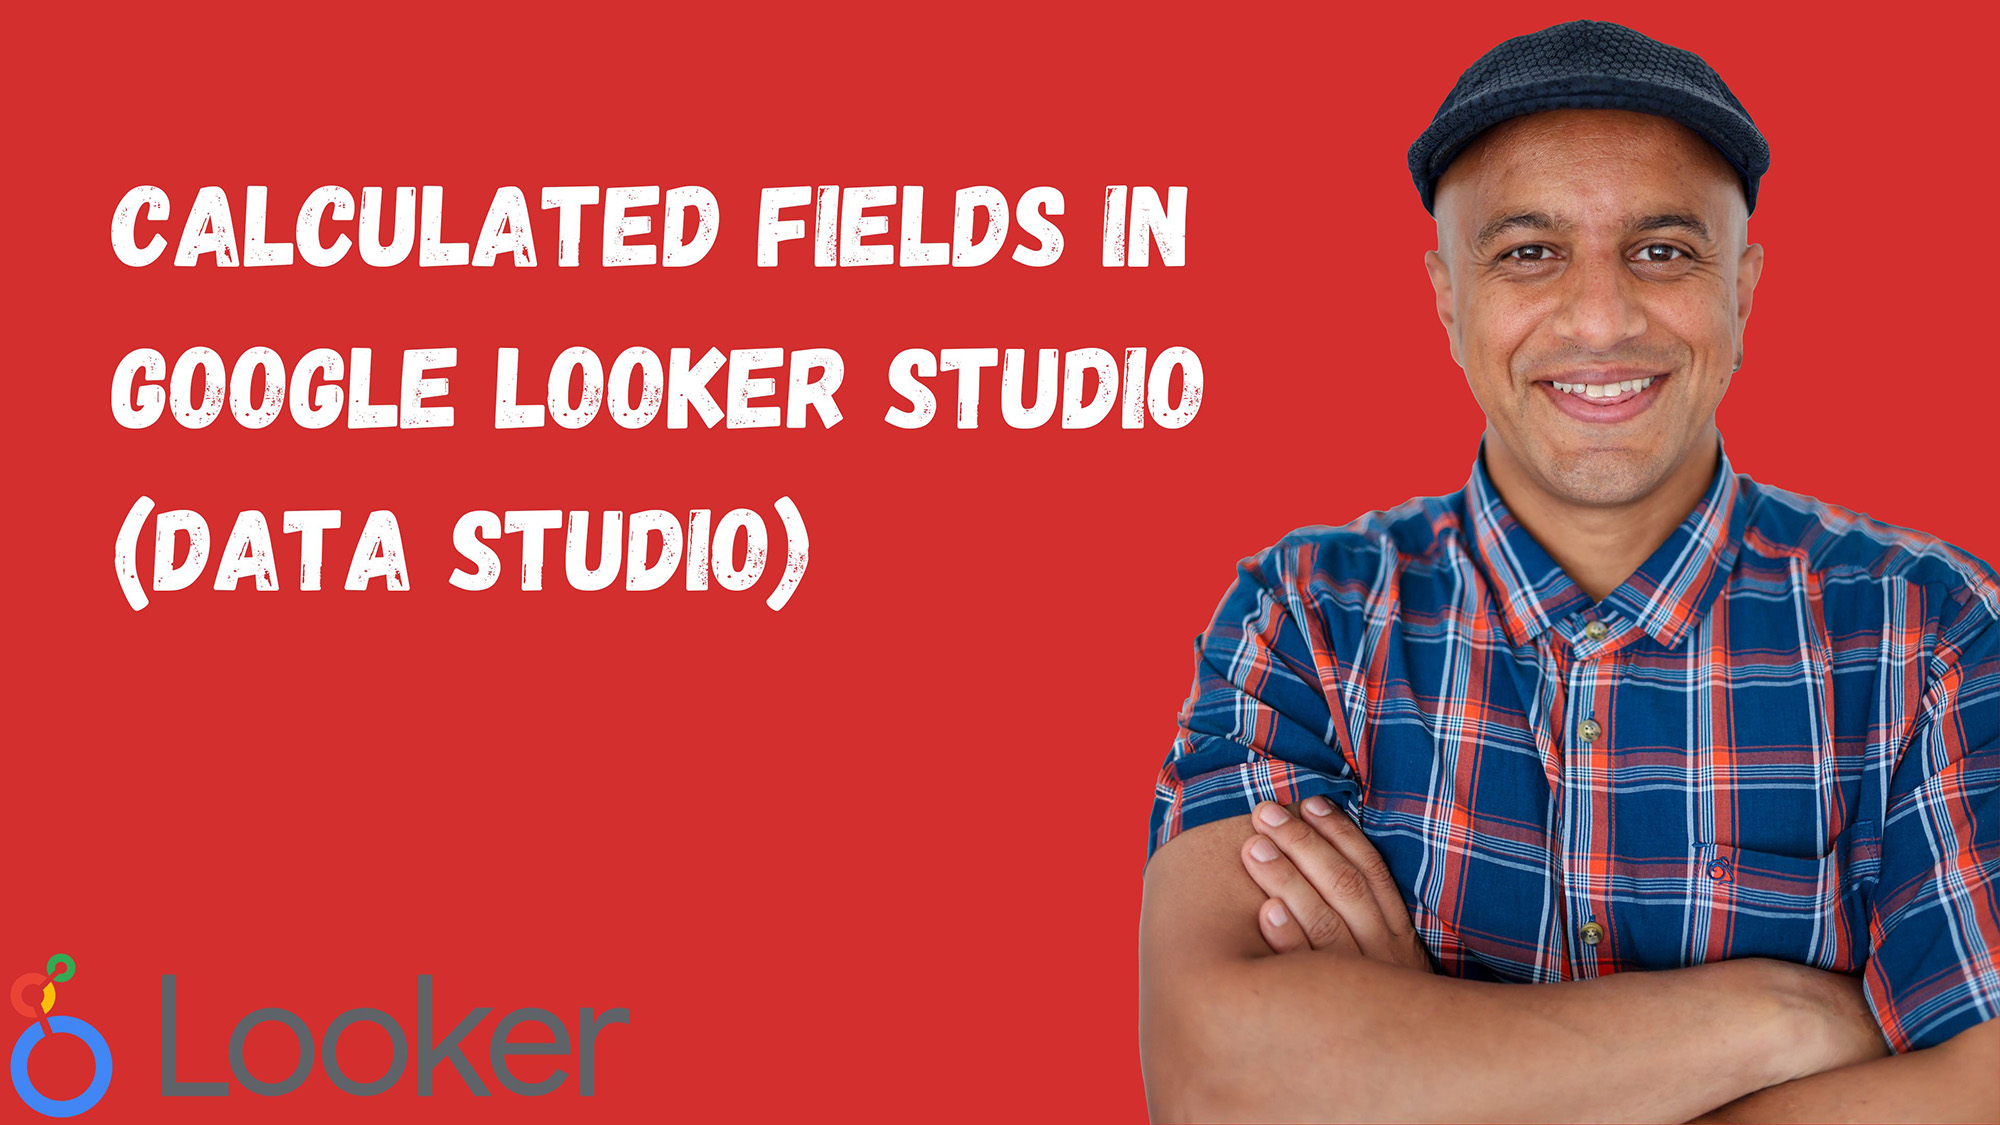 Calculated fields in Google Looker Studio (Data Studio)